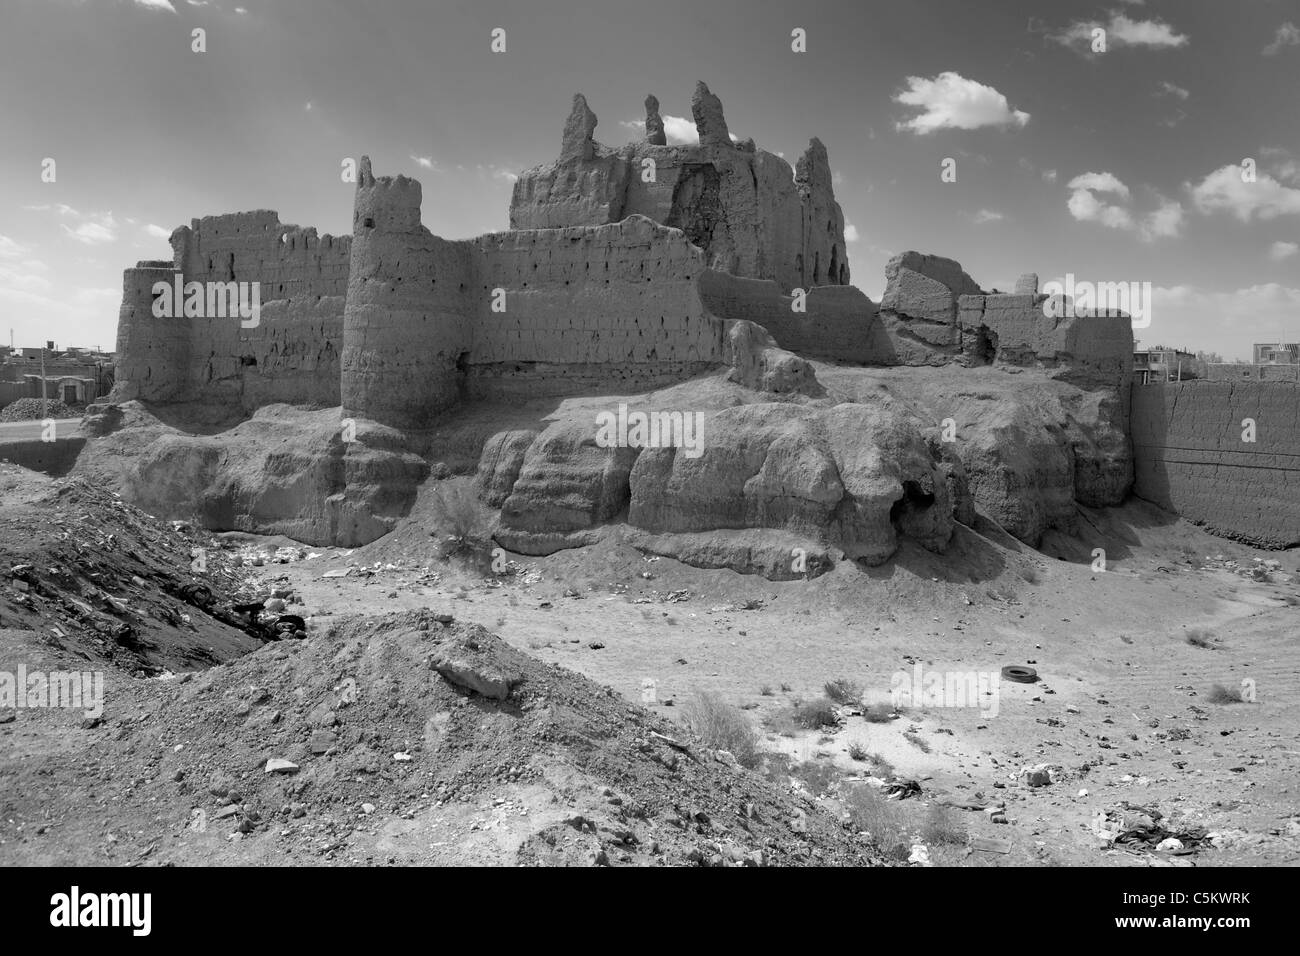 Old citadel, Nain, province Isfahan, Iran Stock Photo